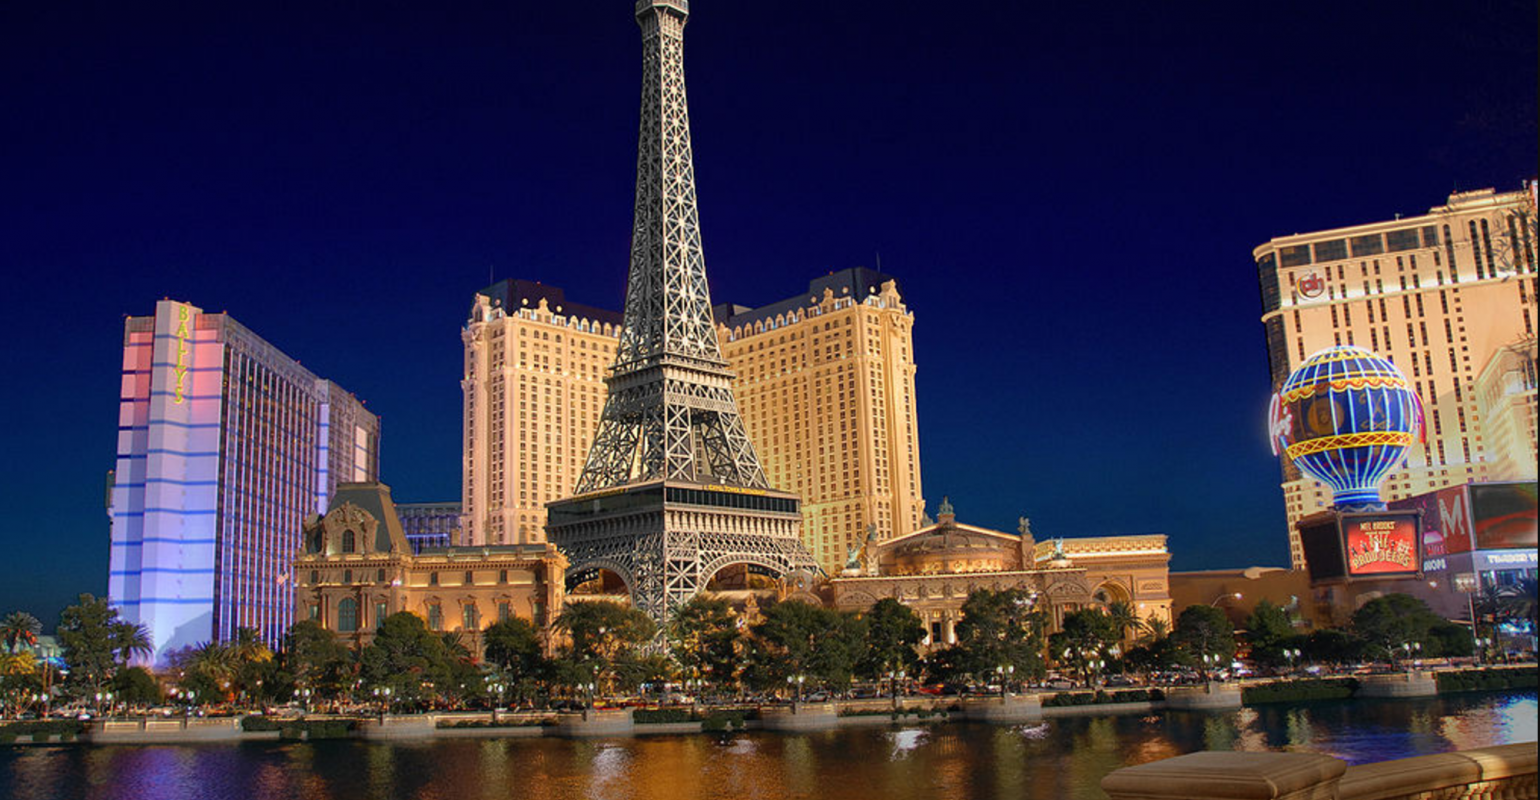 Paris Las Vegas Celebrates 20 Years of Ooh La La